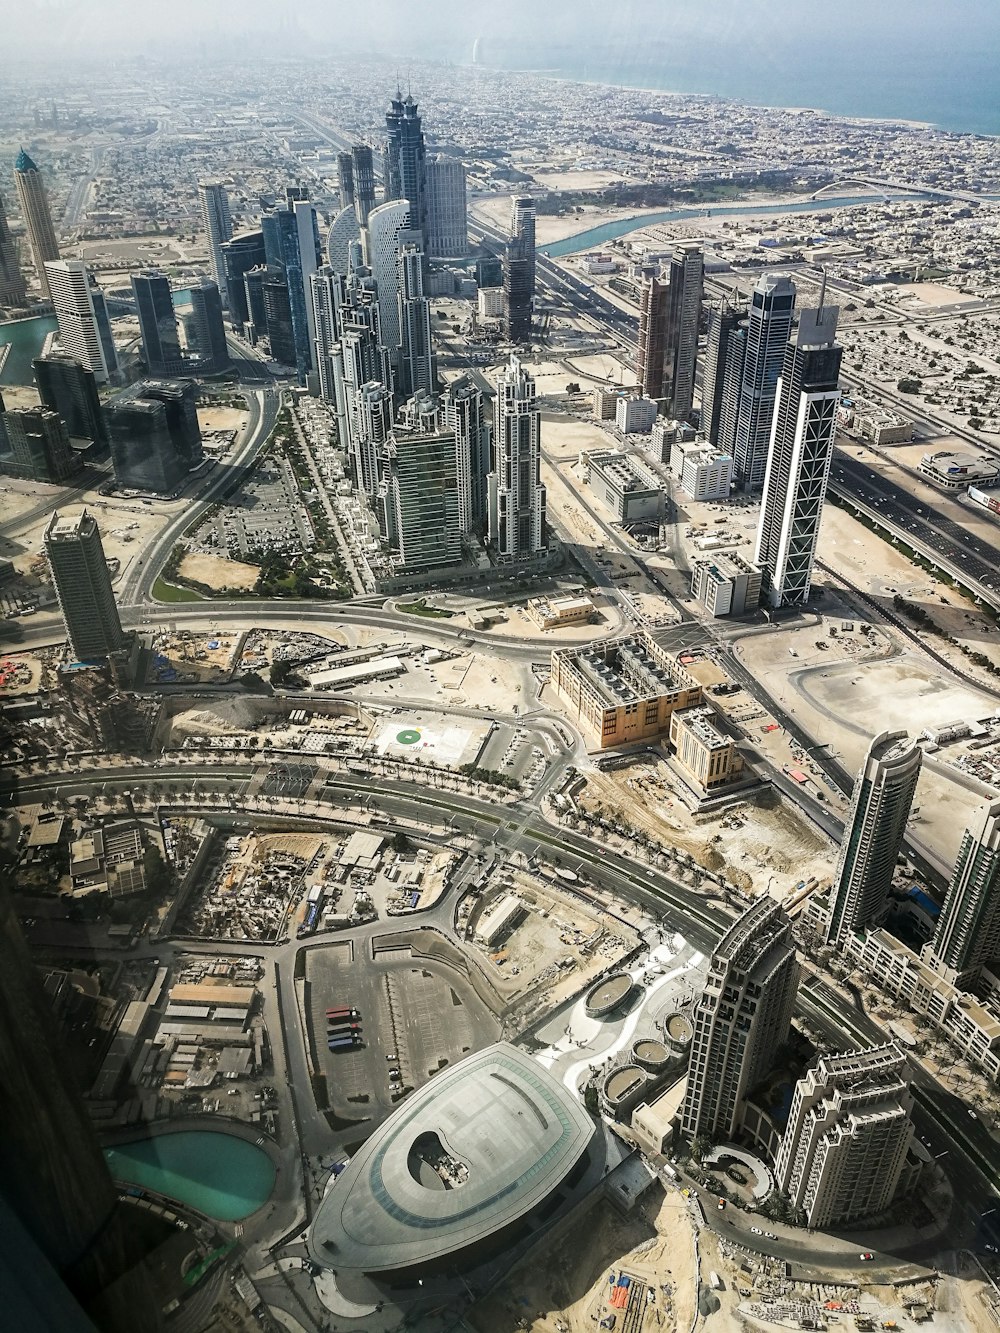 Foto a vista de pájaro de edificios de gran altura en la ciudad